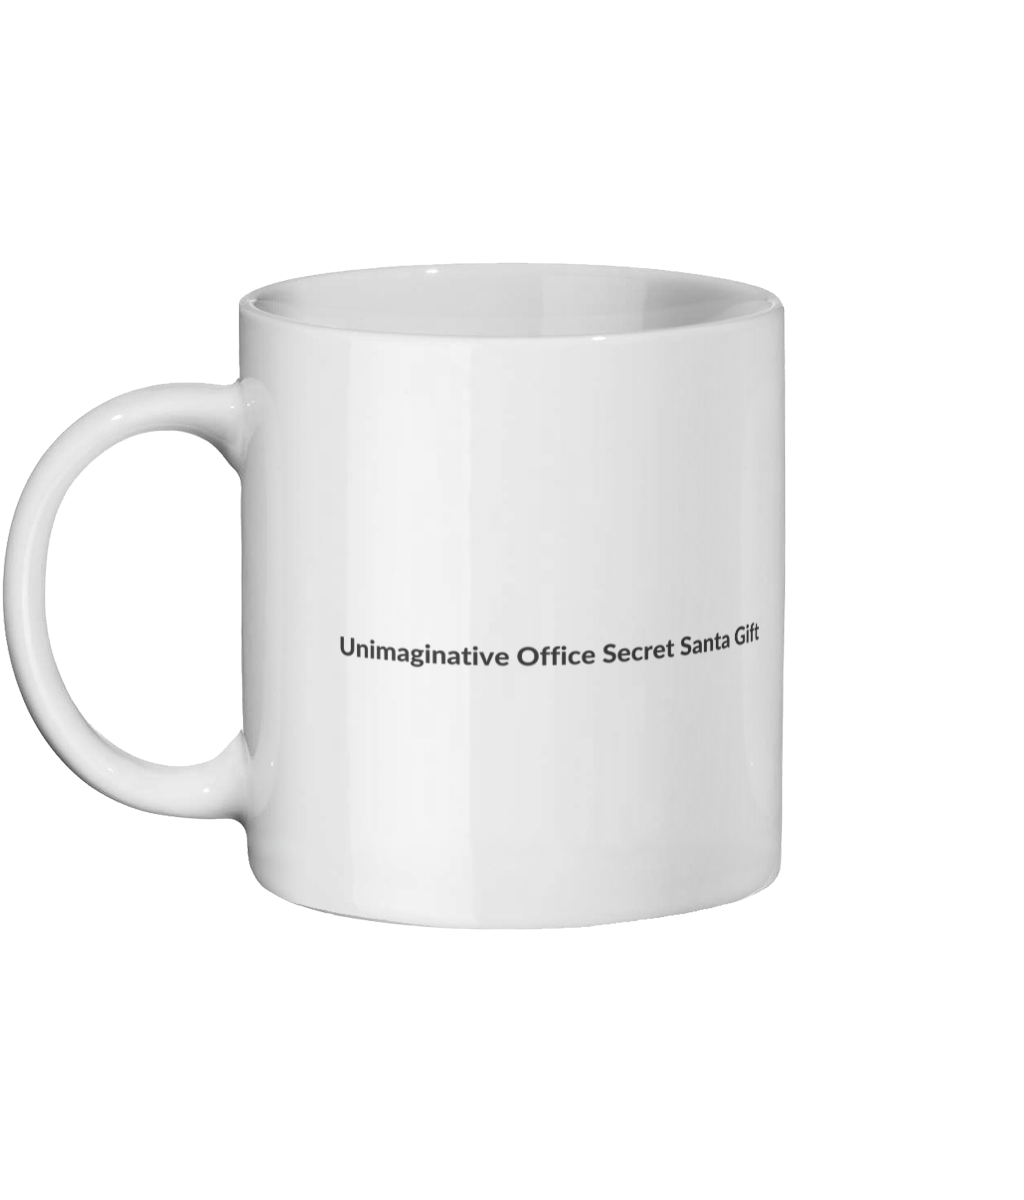 Unimaginative Office Secret Santa Gift Mug Left Side